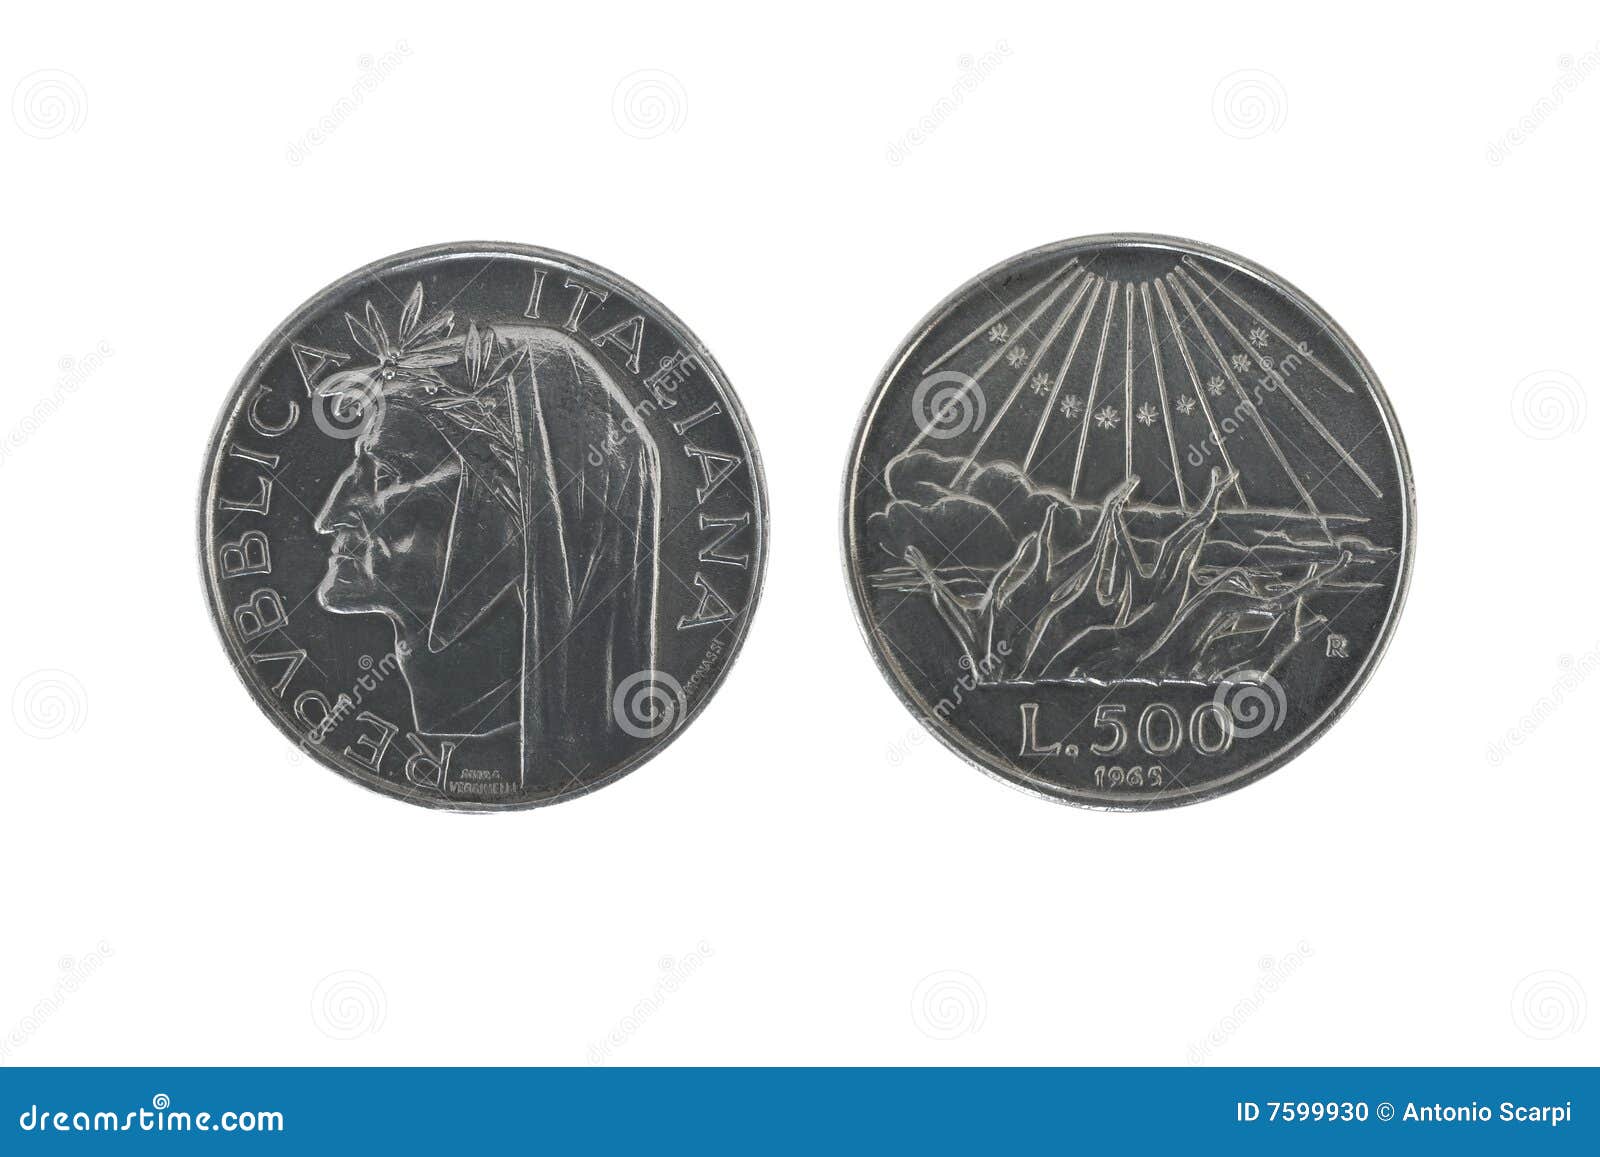 dante silver coins 2